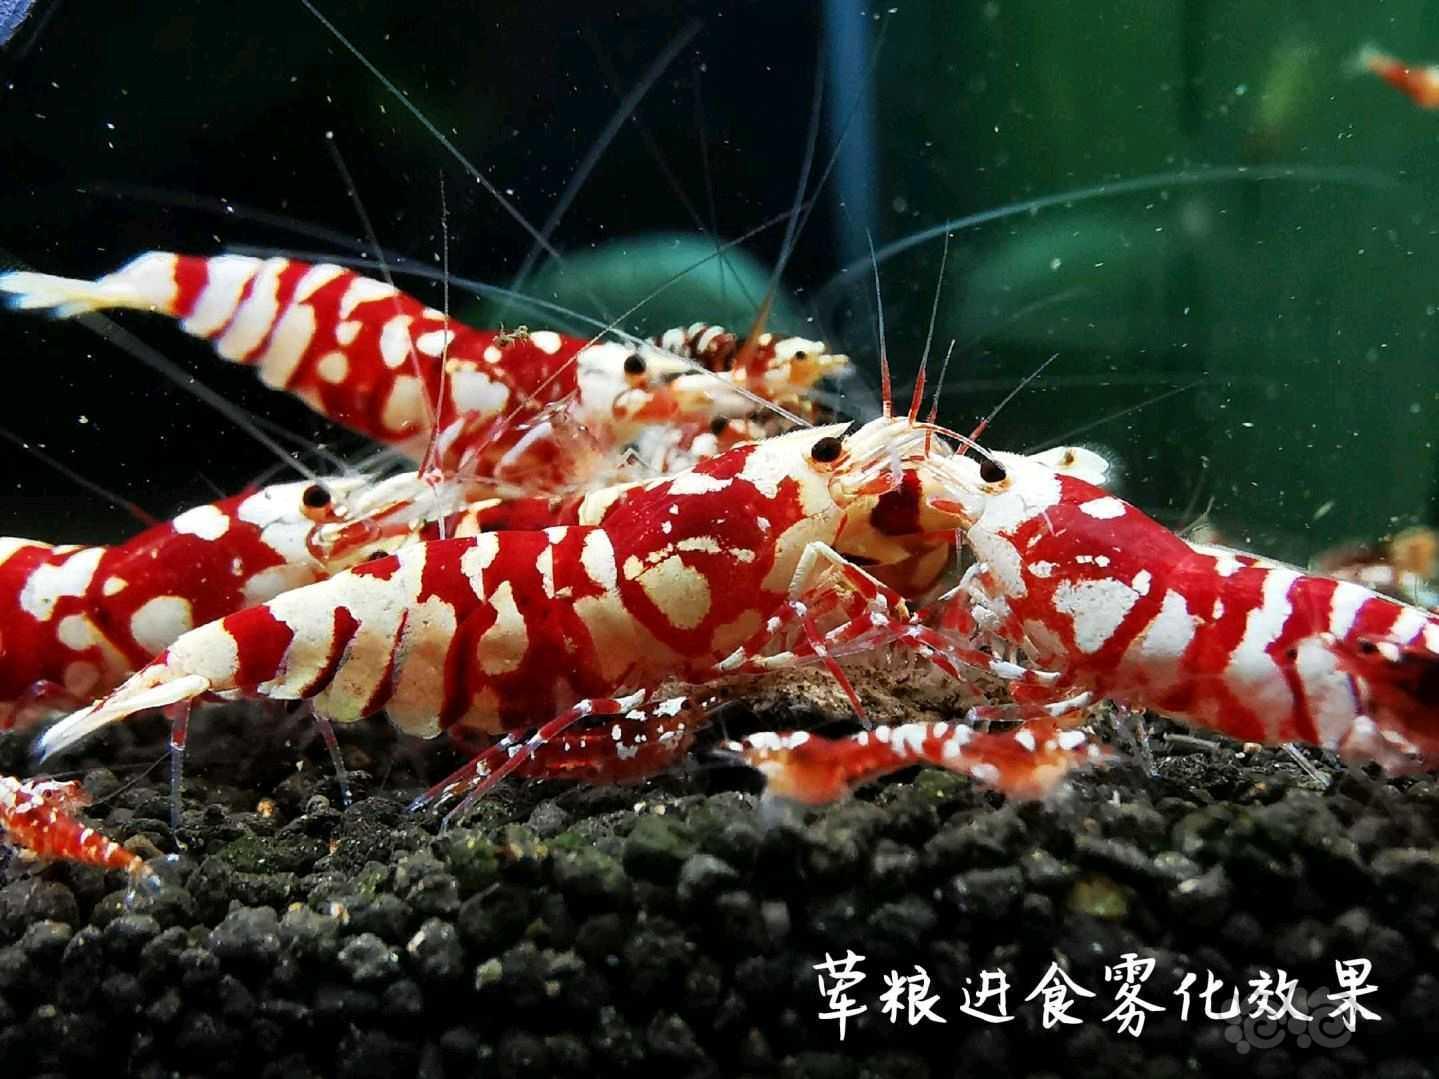 【用品】2021-08-09#RMB拍卖瑾福水晶虾饲料一套-图7